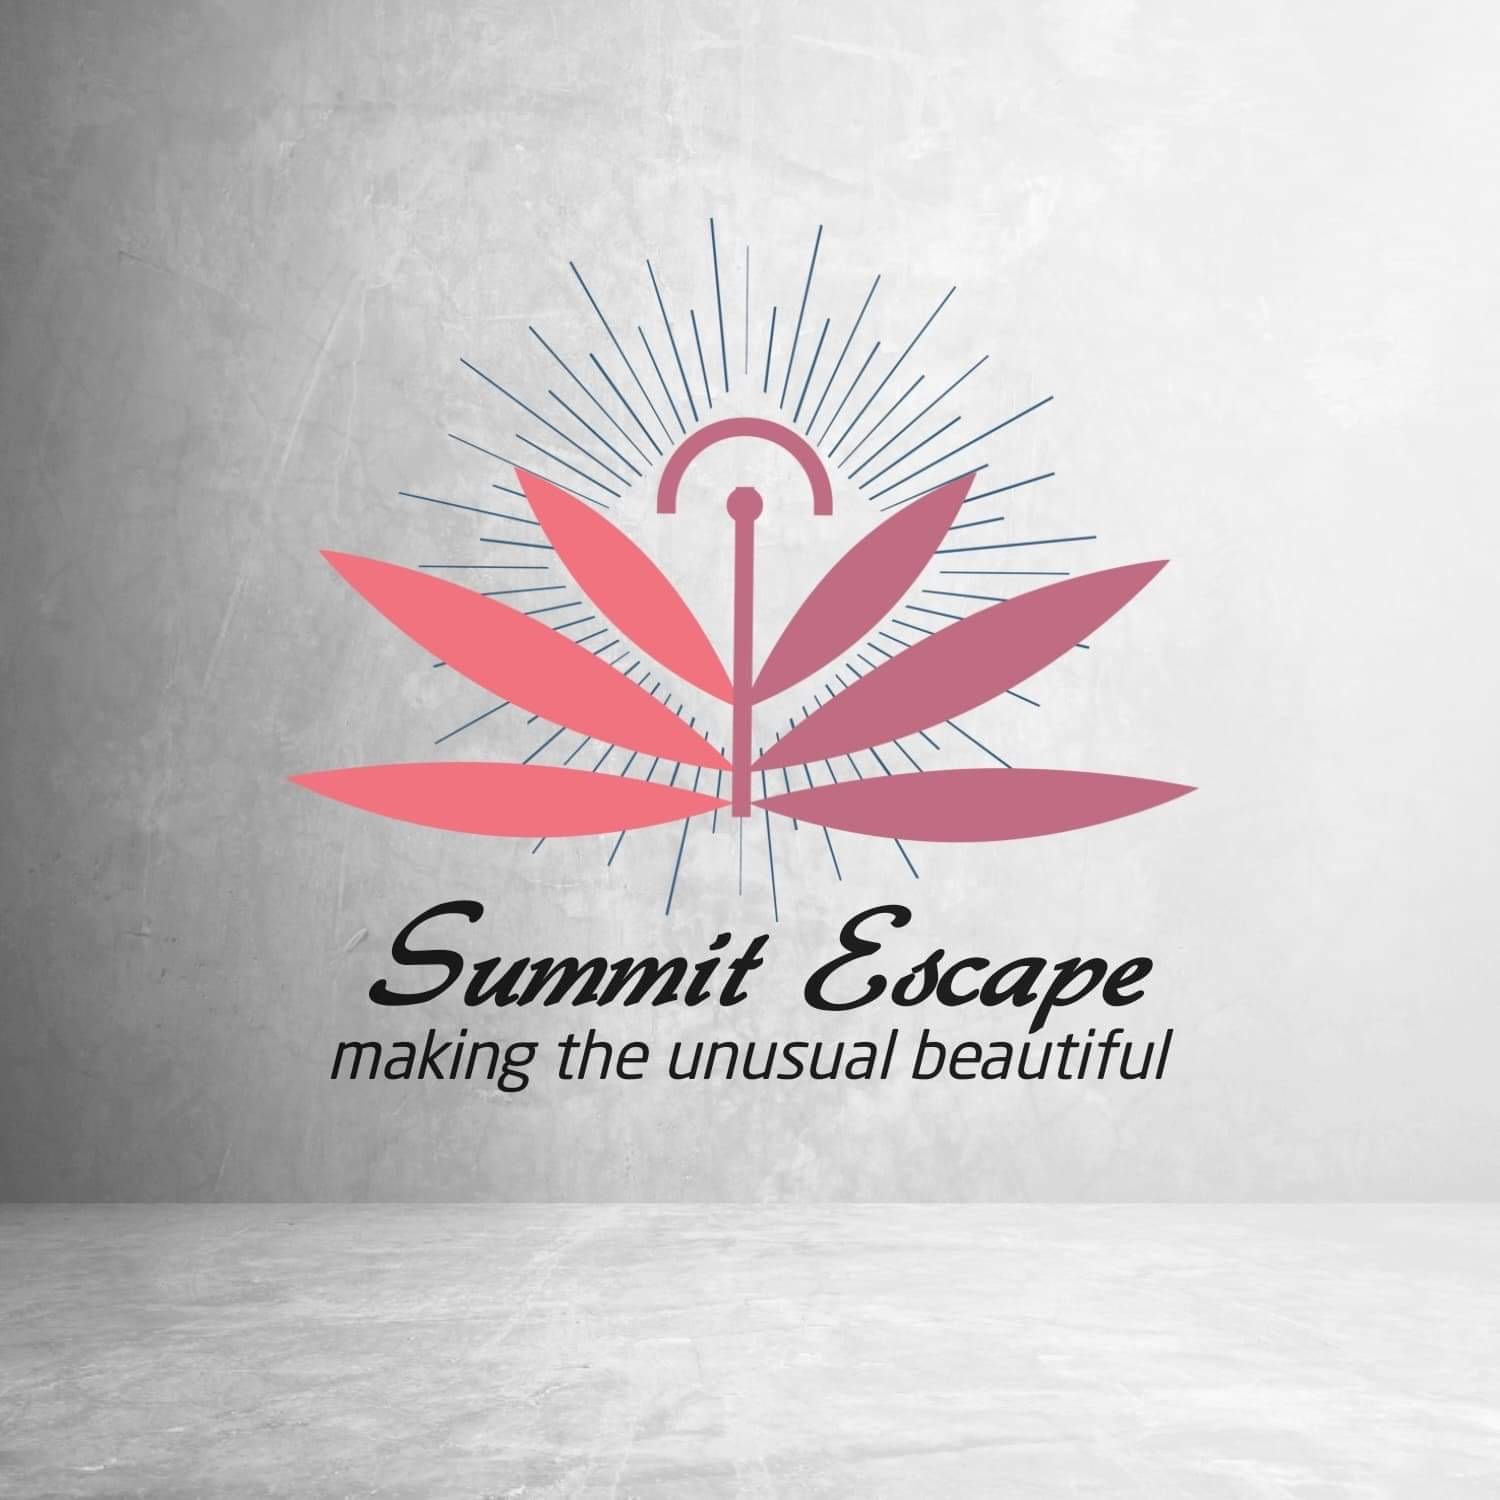 Summit Escape